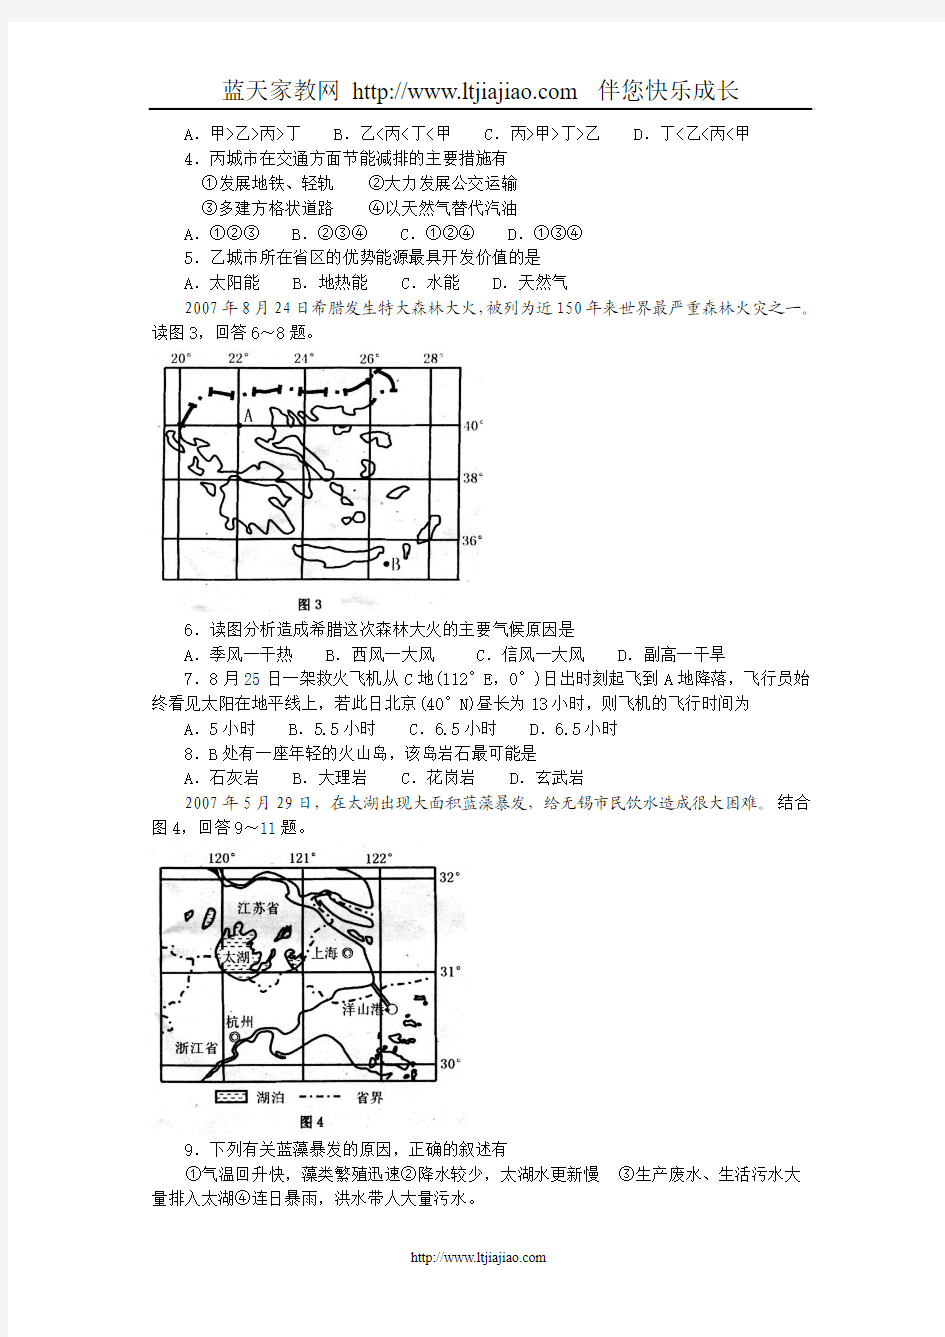 重庆市高2008级高三第一次诊断性考试地理试题